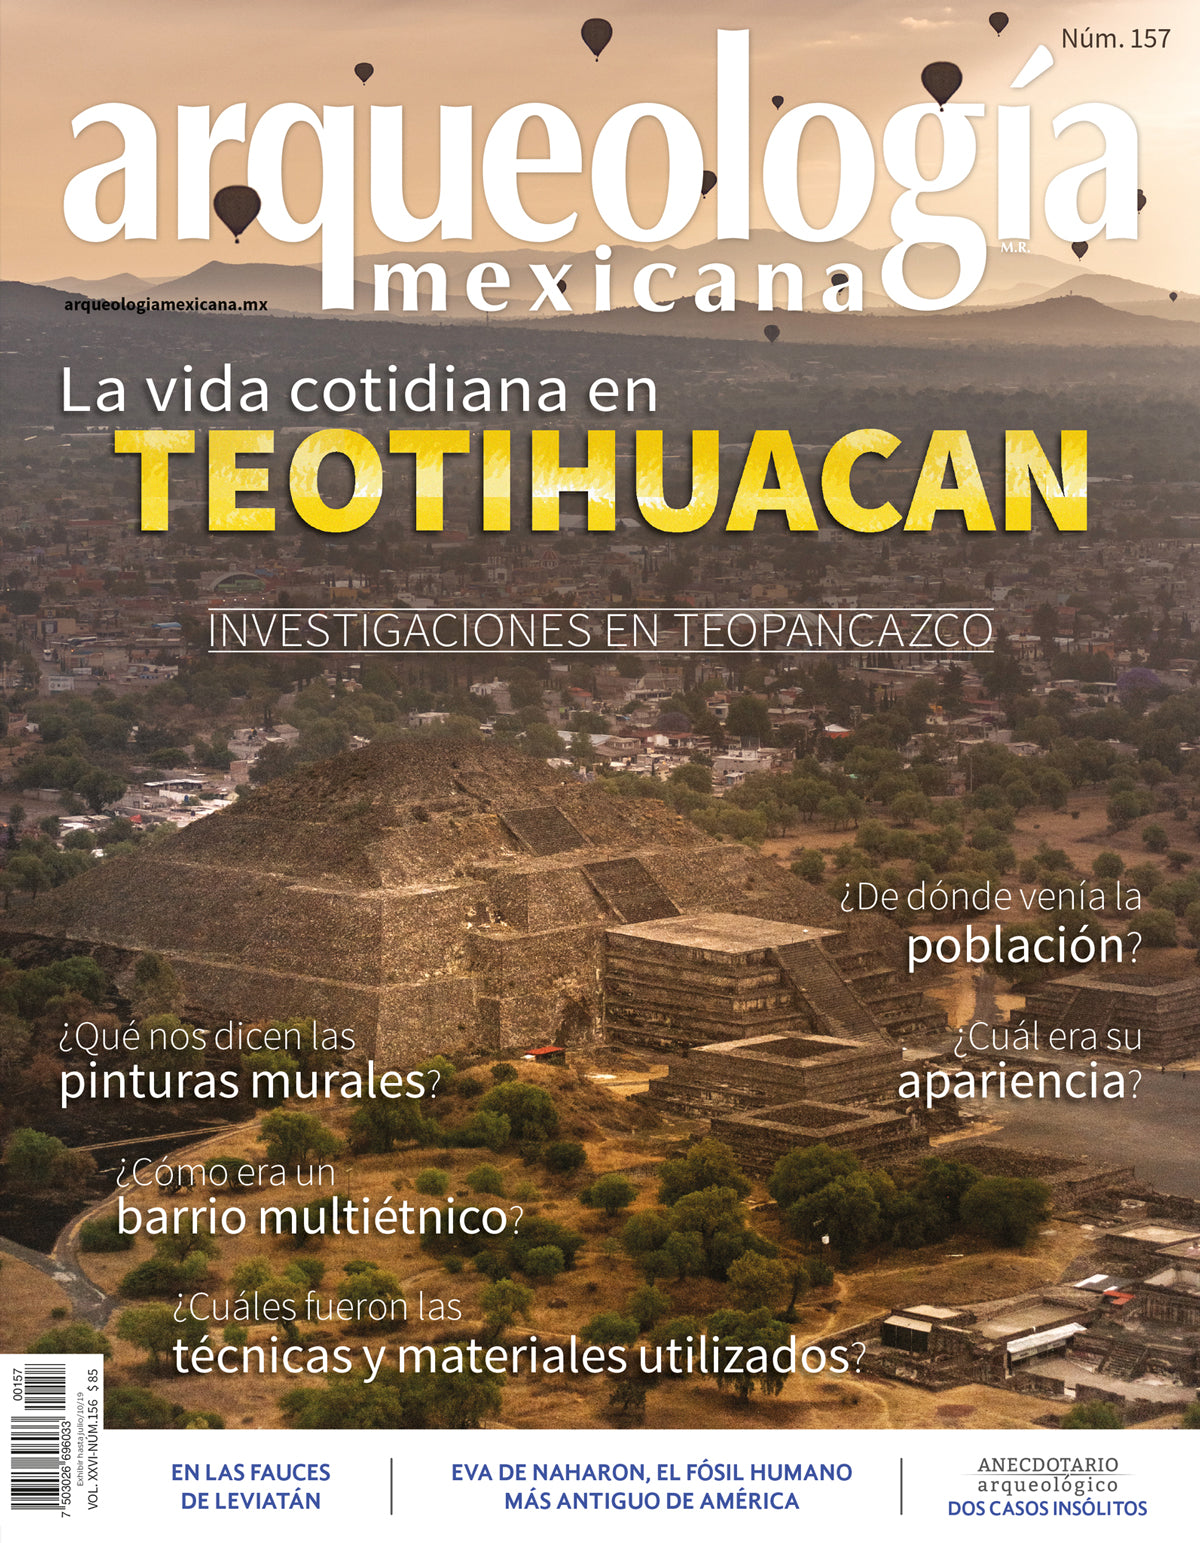 La vida cotidiana en Teotihuacan